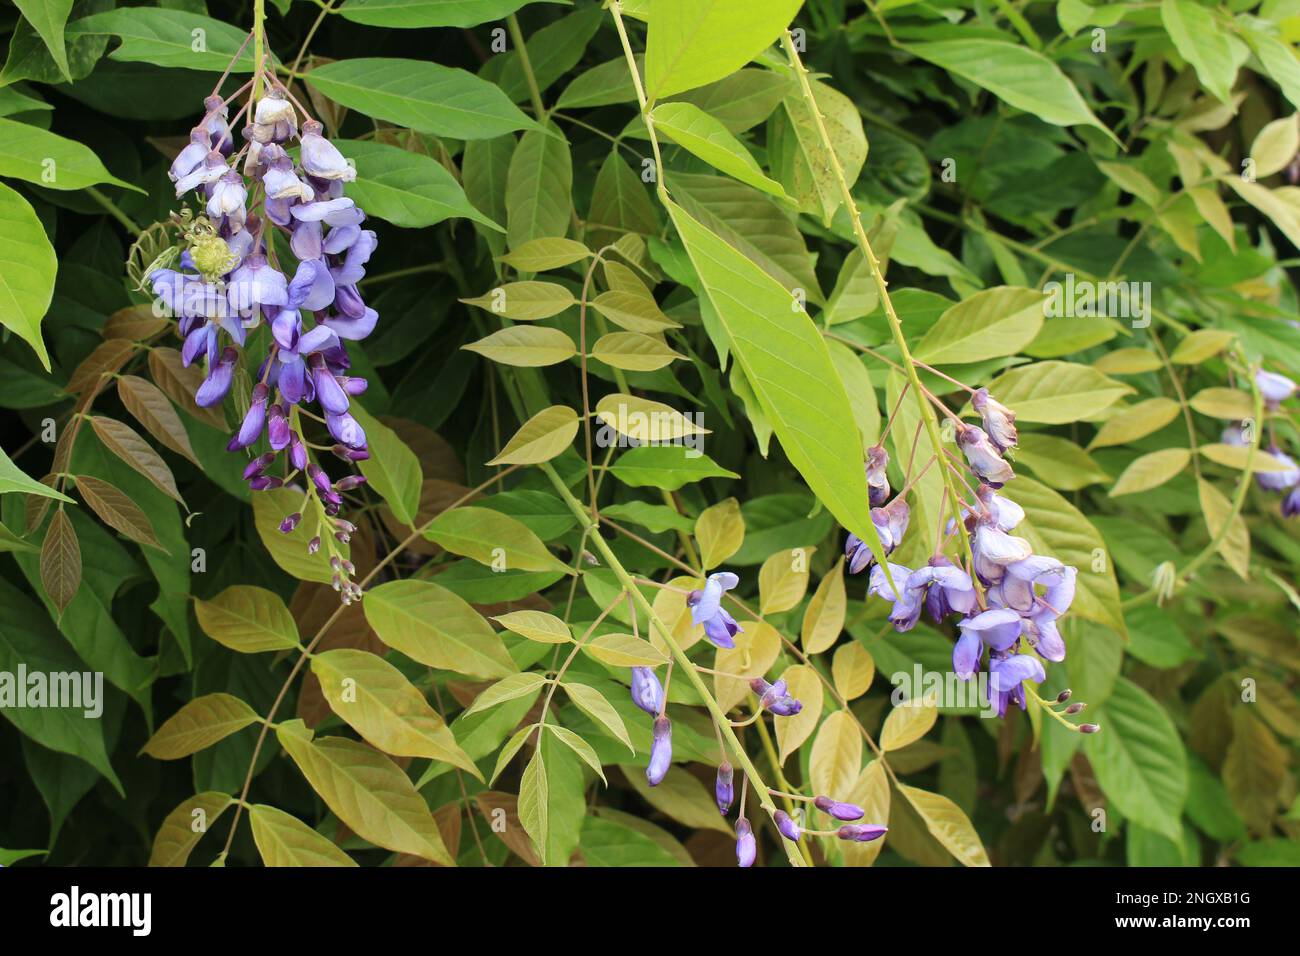 Glycine violette en fleurs sur fond de feuilles vertes. Ratons laveurs de wisteria à fleurs violettes - économiseur d'écran de jardin naturel ou papier peint Banque D'Images